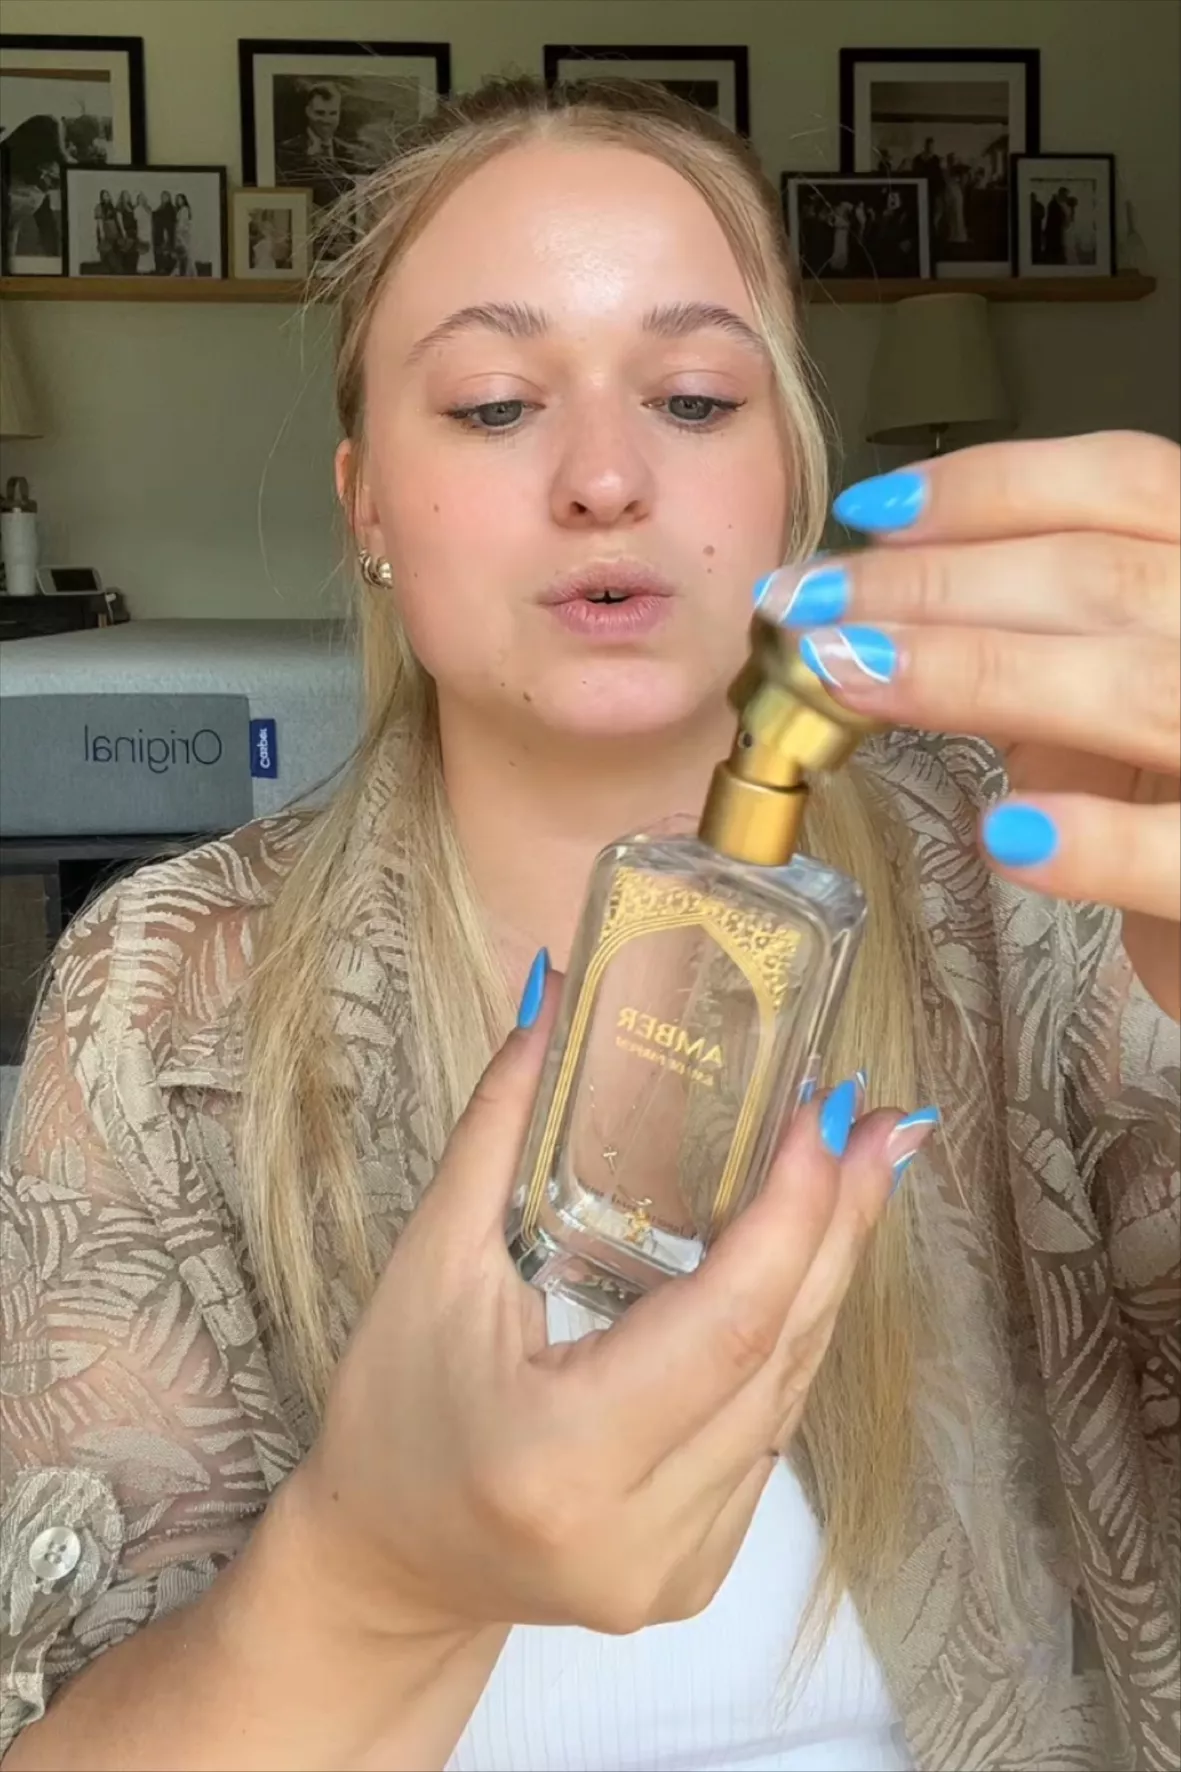 Nemat Amber Fragrance Oil Roll On